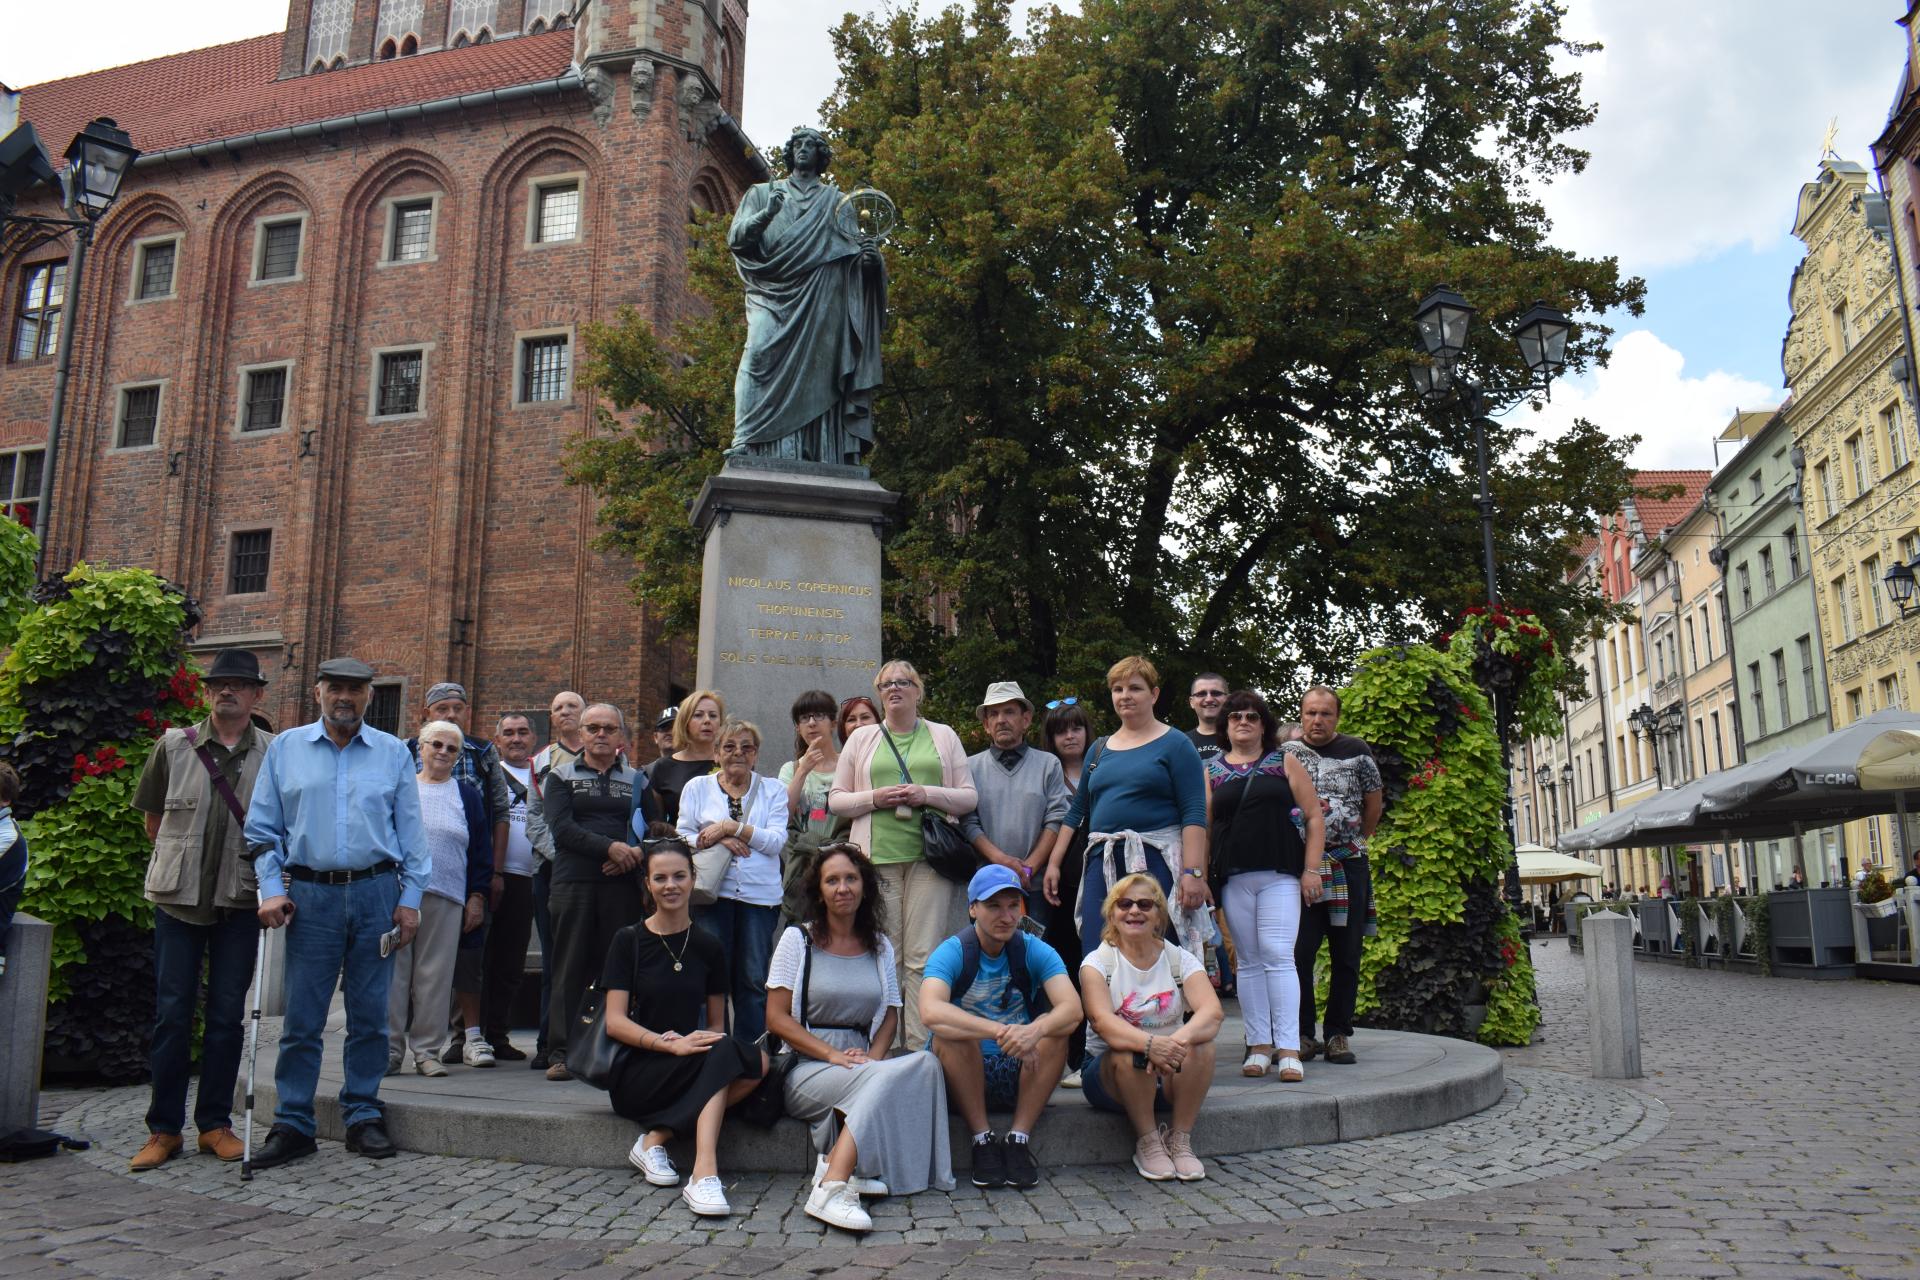 Grupa uczestników wycieczki stoi przy pomniku na rynku przy pomniku Mikołaja Kopernika w Toruniu